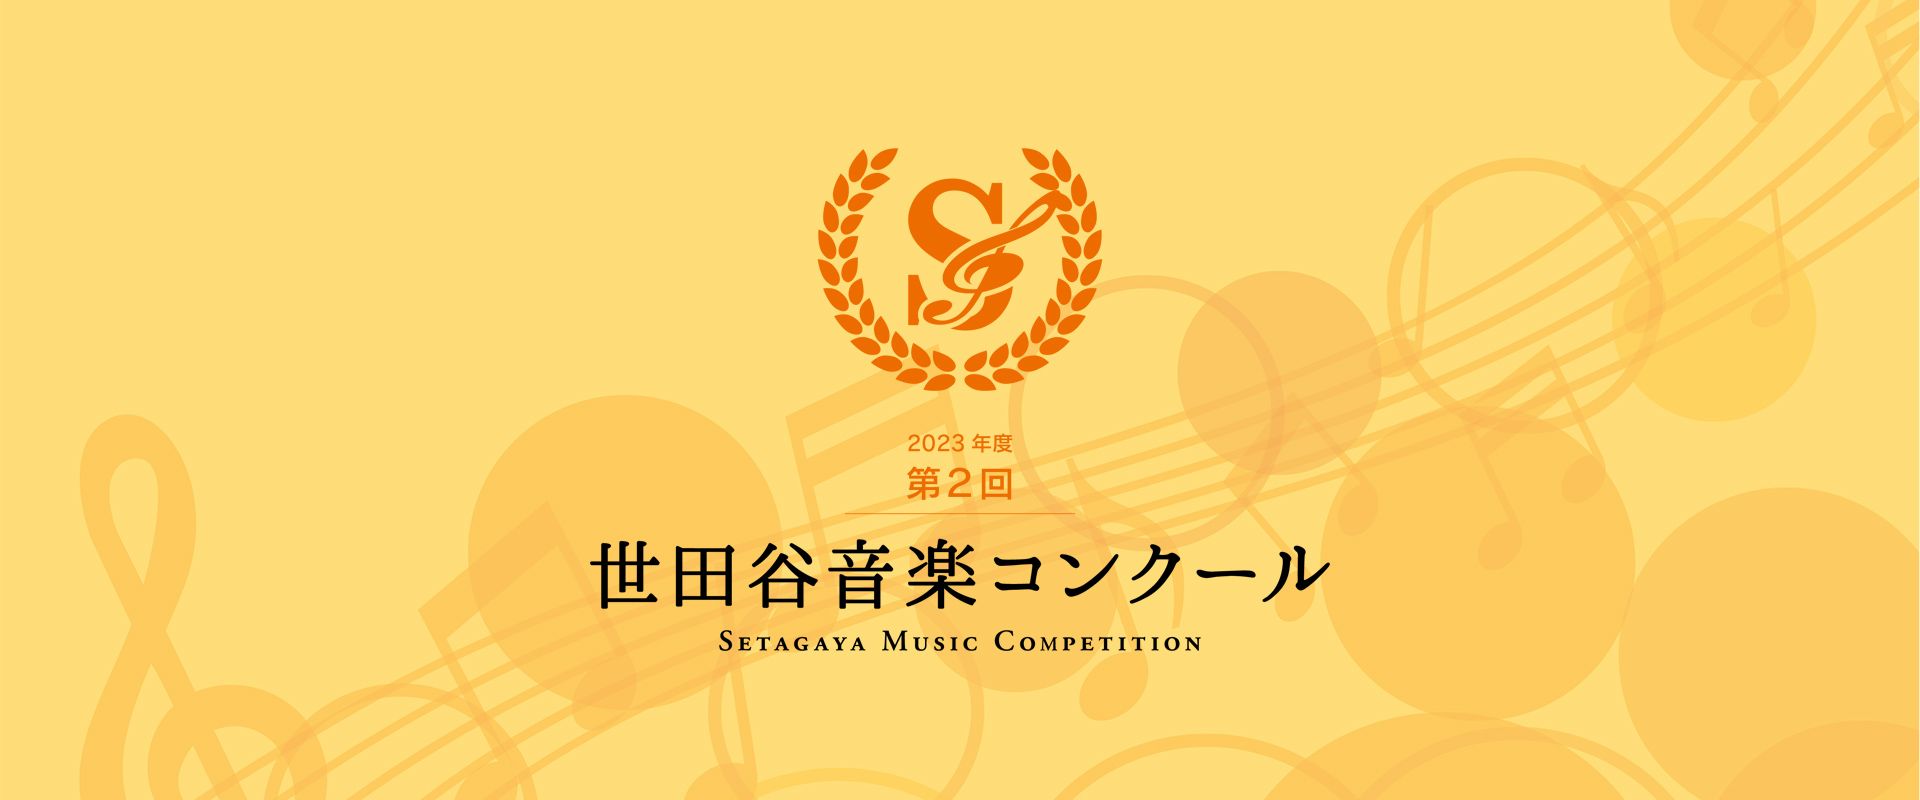 入賞者コンサート 申込フォーム – 第2回 世田谷音楽コンクール – Setagaya Music Competition